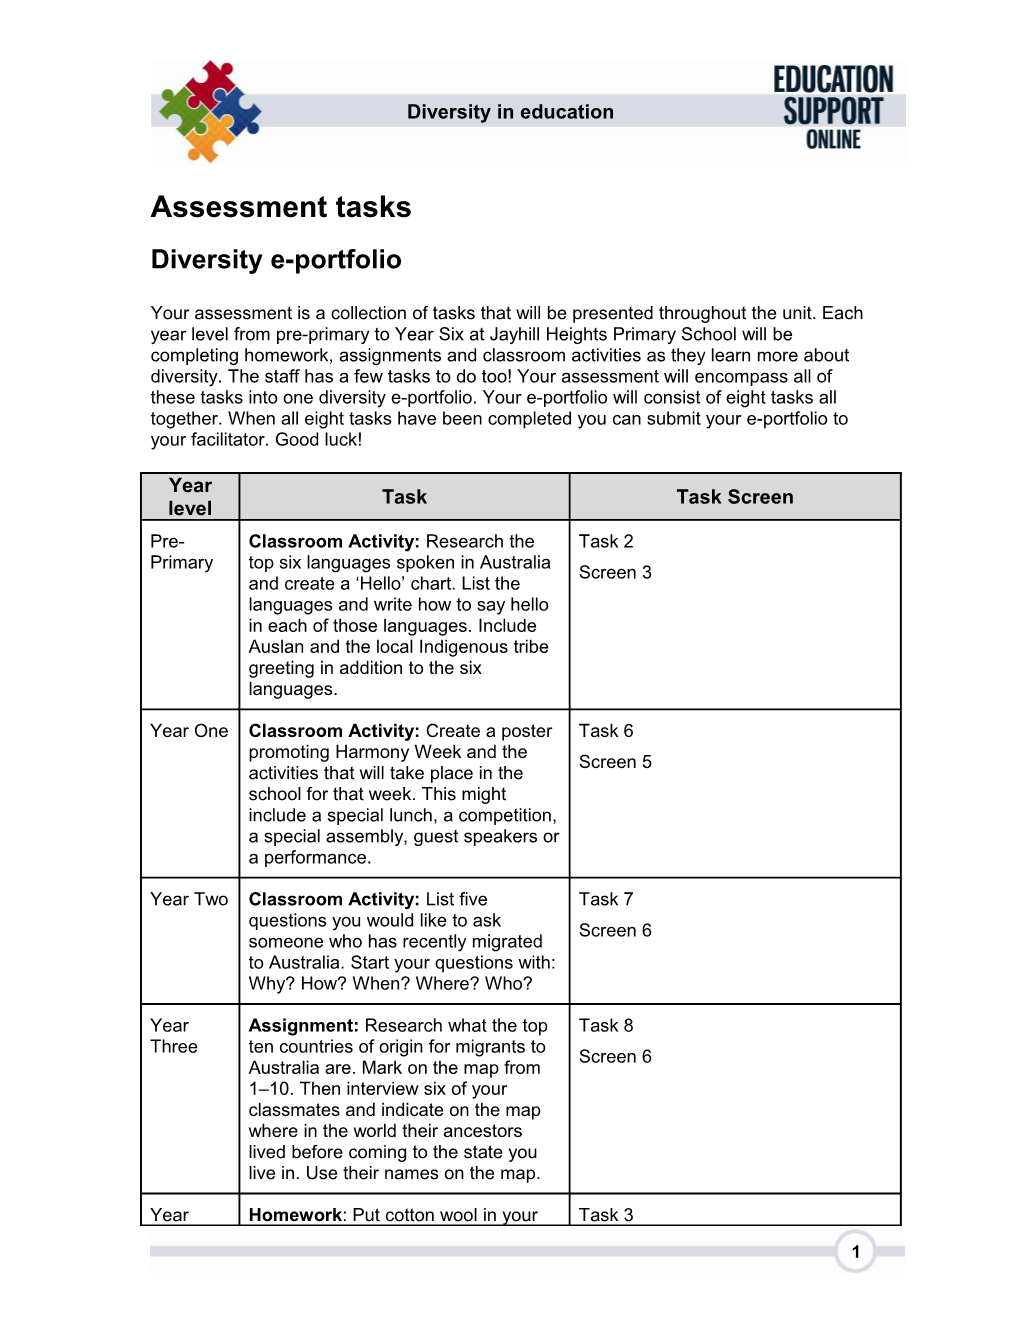 Assessment Tasks s1